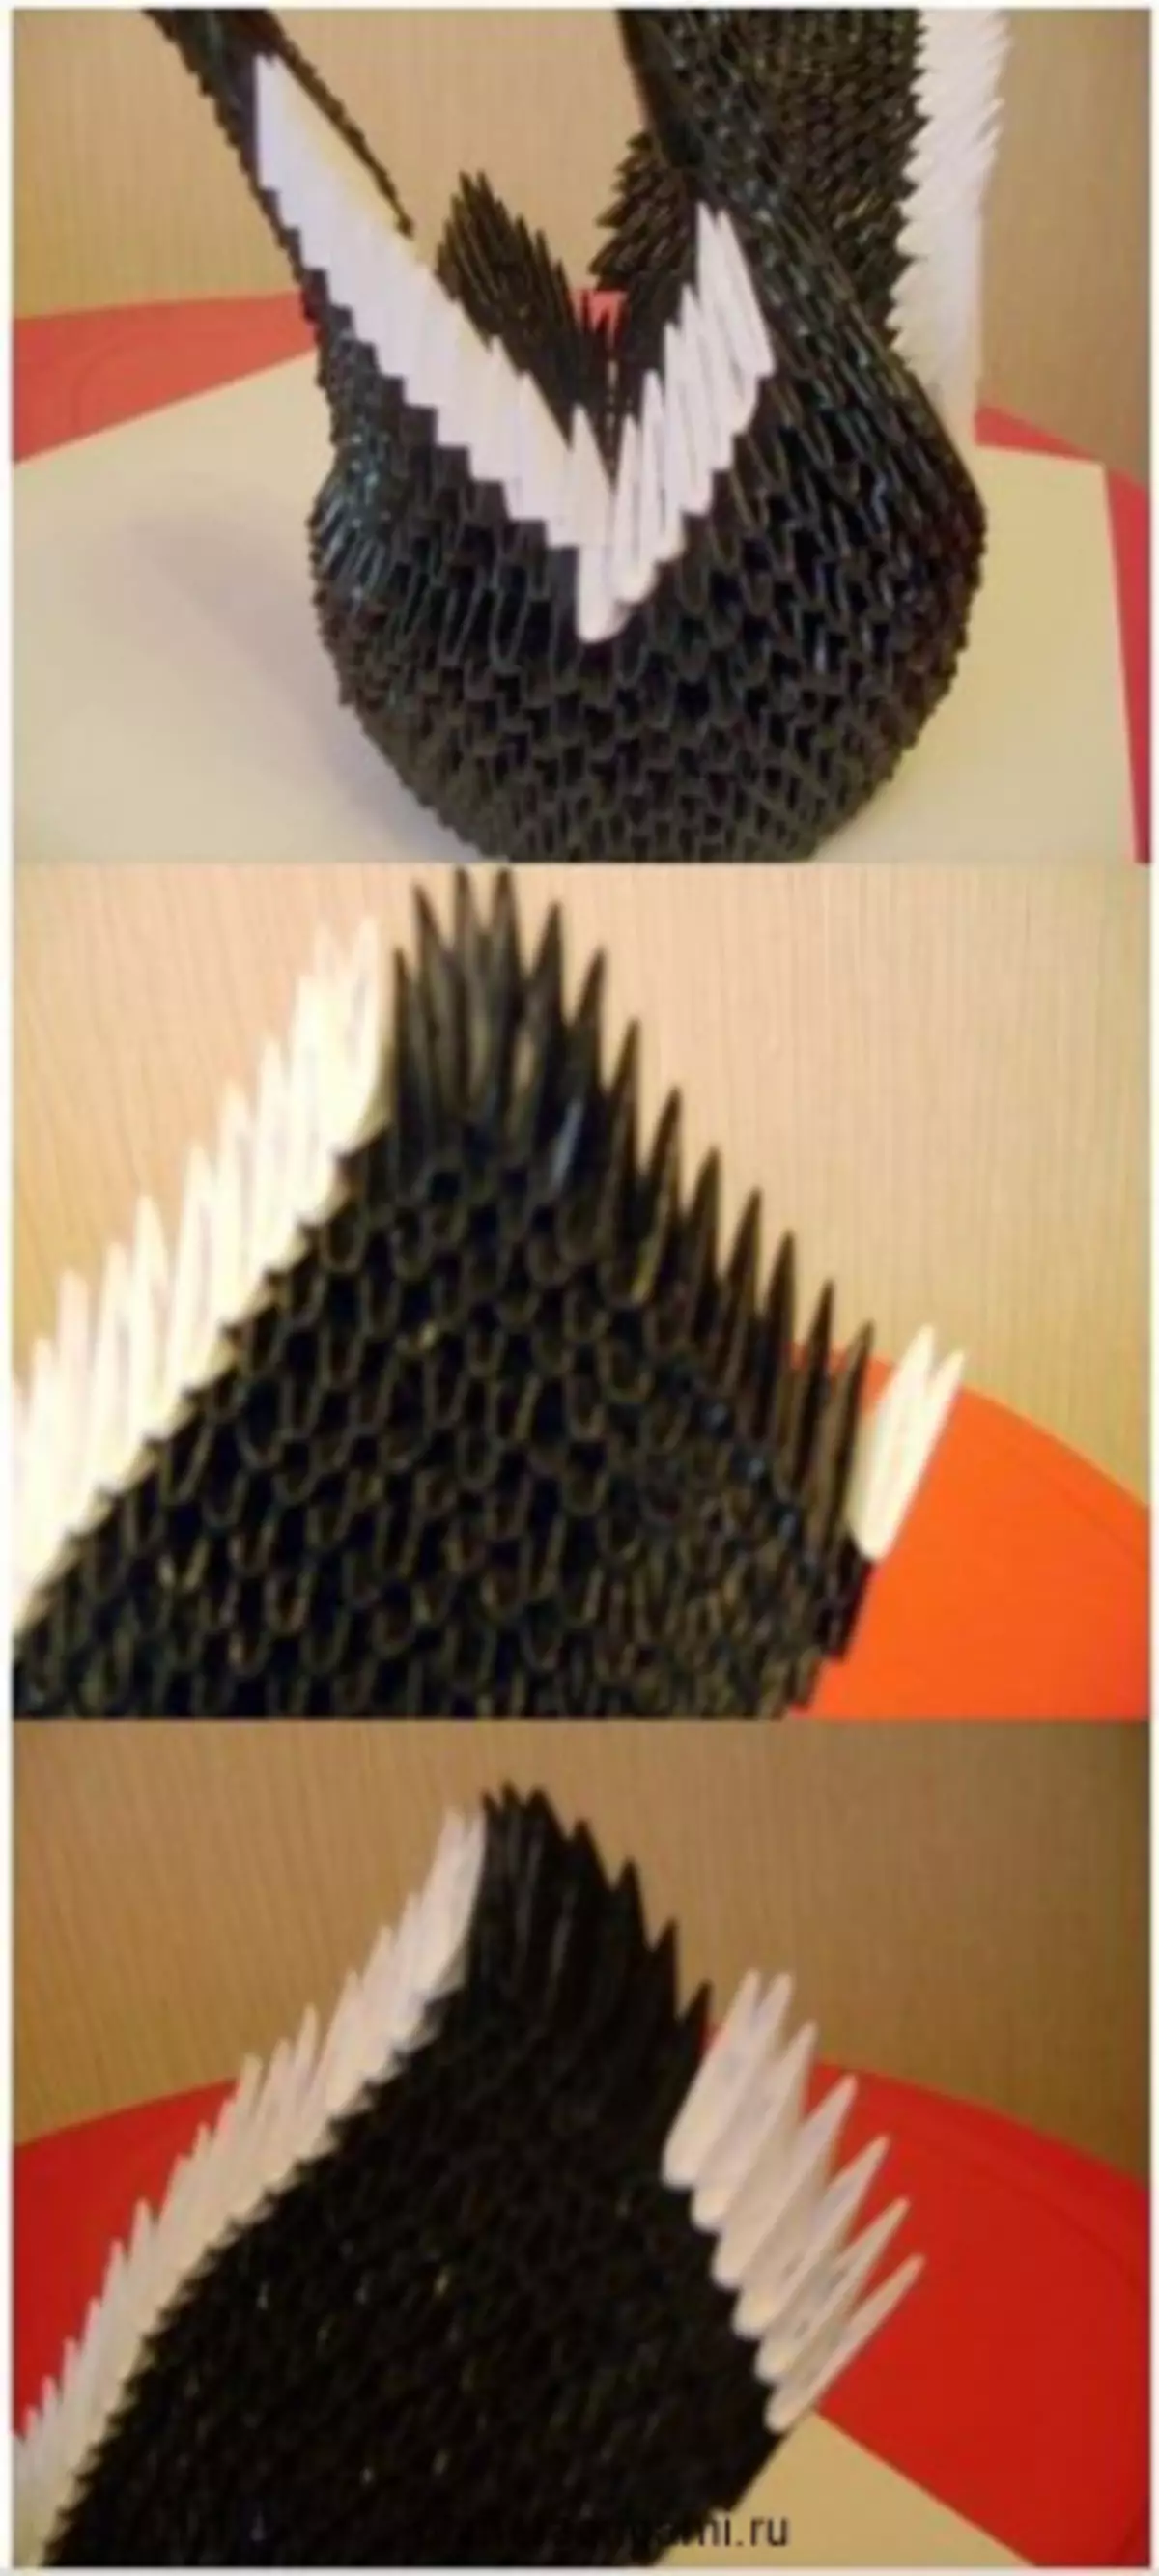 Ufundi kutoka modules ya origami: wanyama kubwa na swan na mk na video